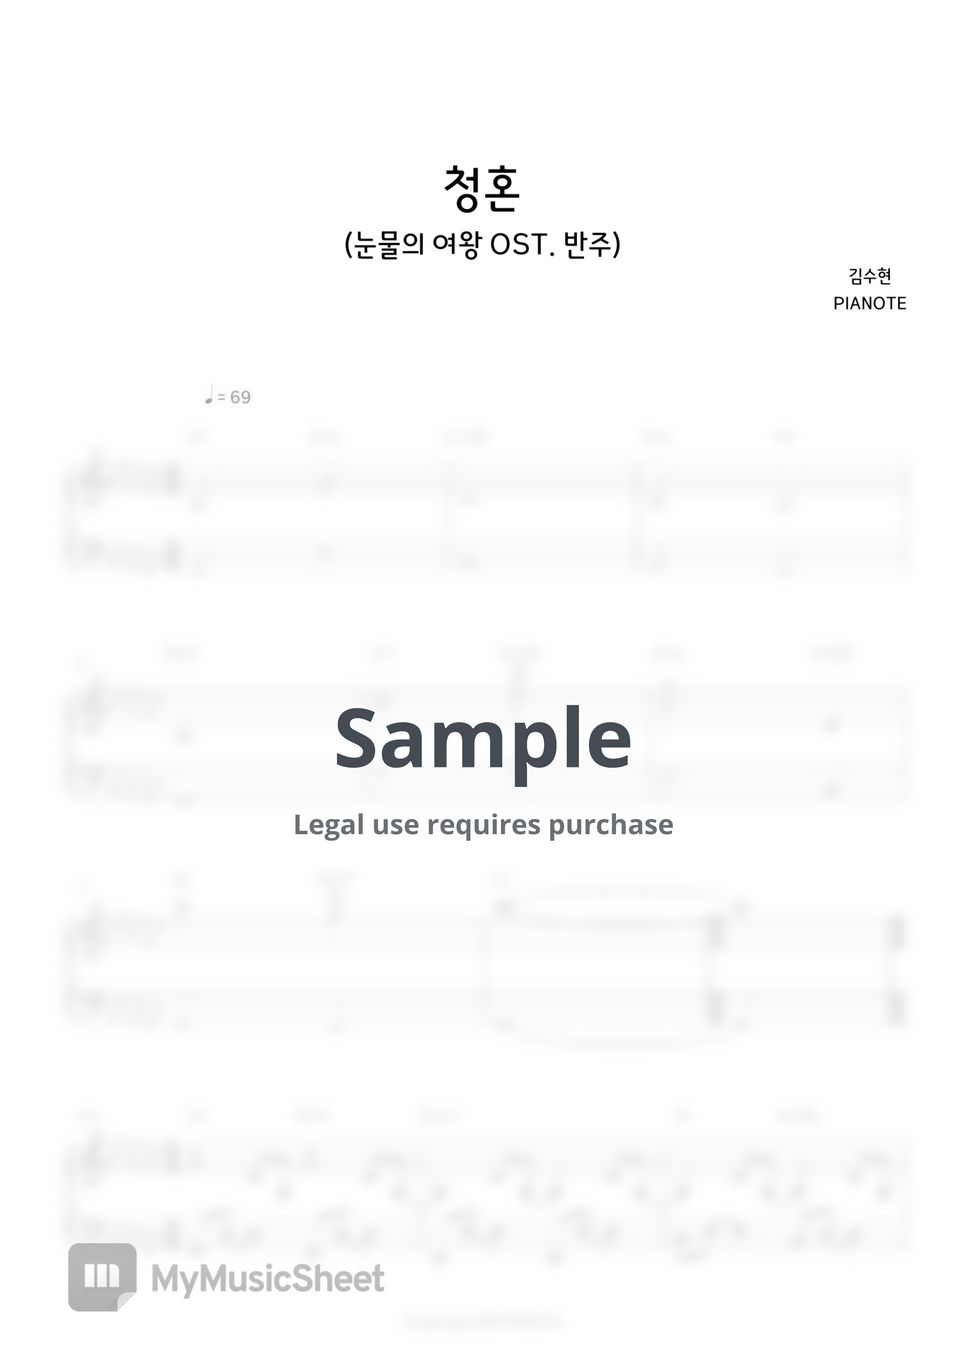 김수현 - 청혼(Way Home)(눈물의 여왕 OST) (MR INST 반주) by PIANOTE피아노트